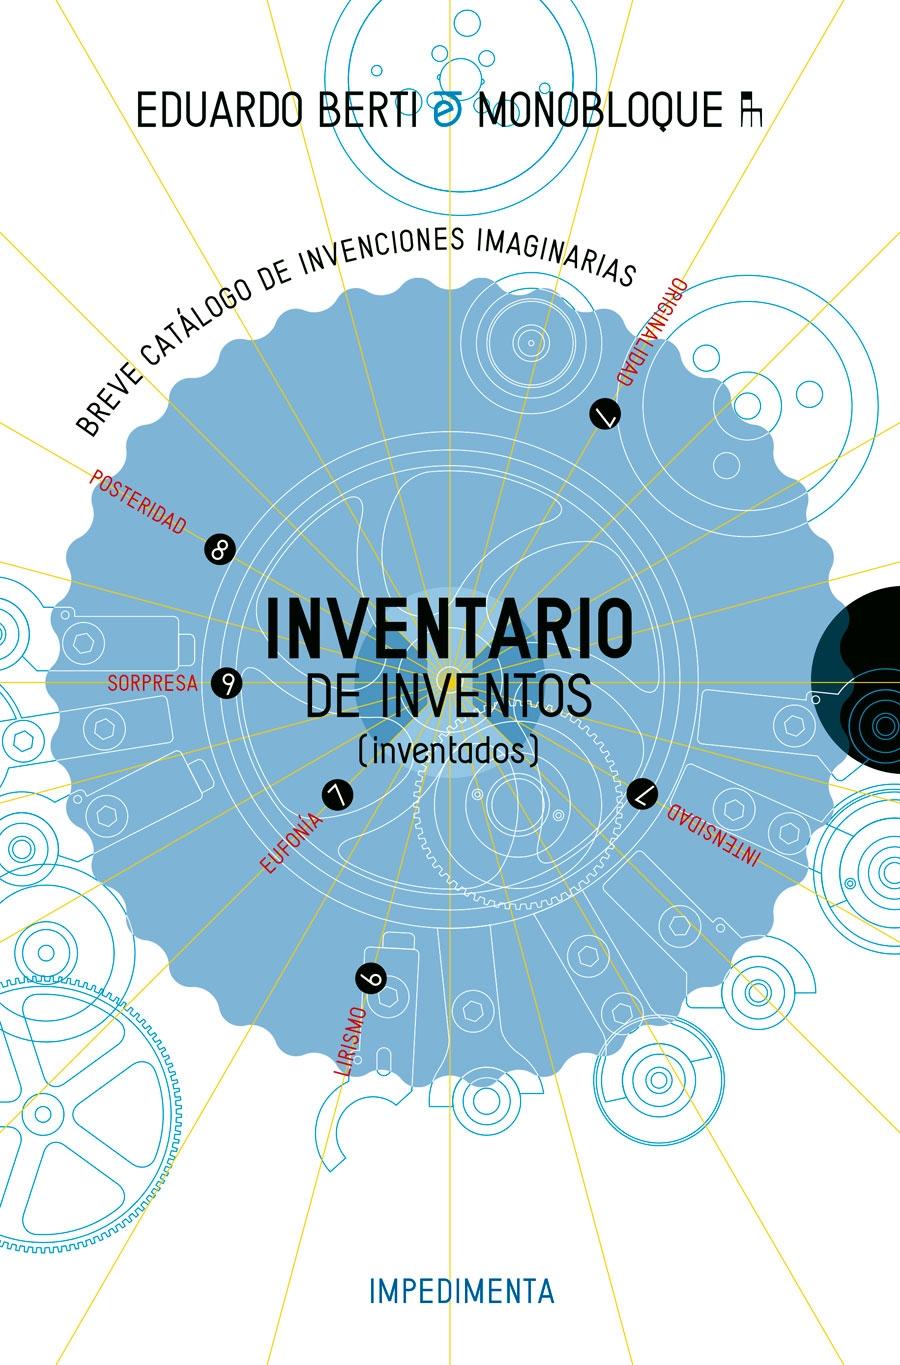 Inventario de Inventos "(Inventados)"